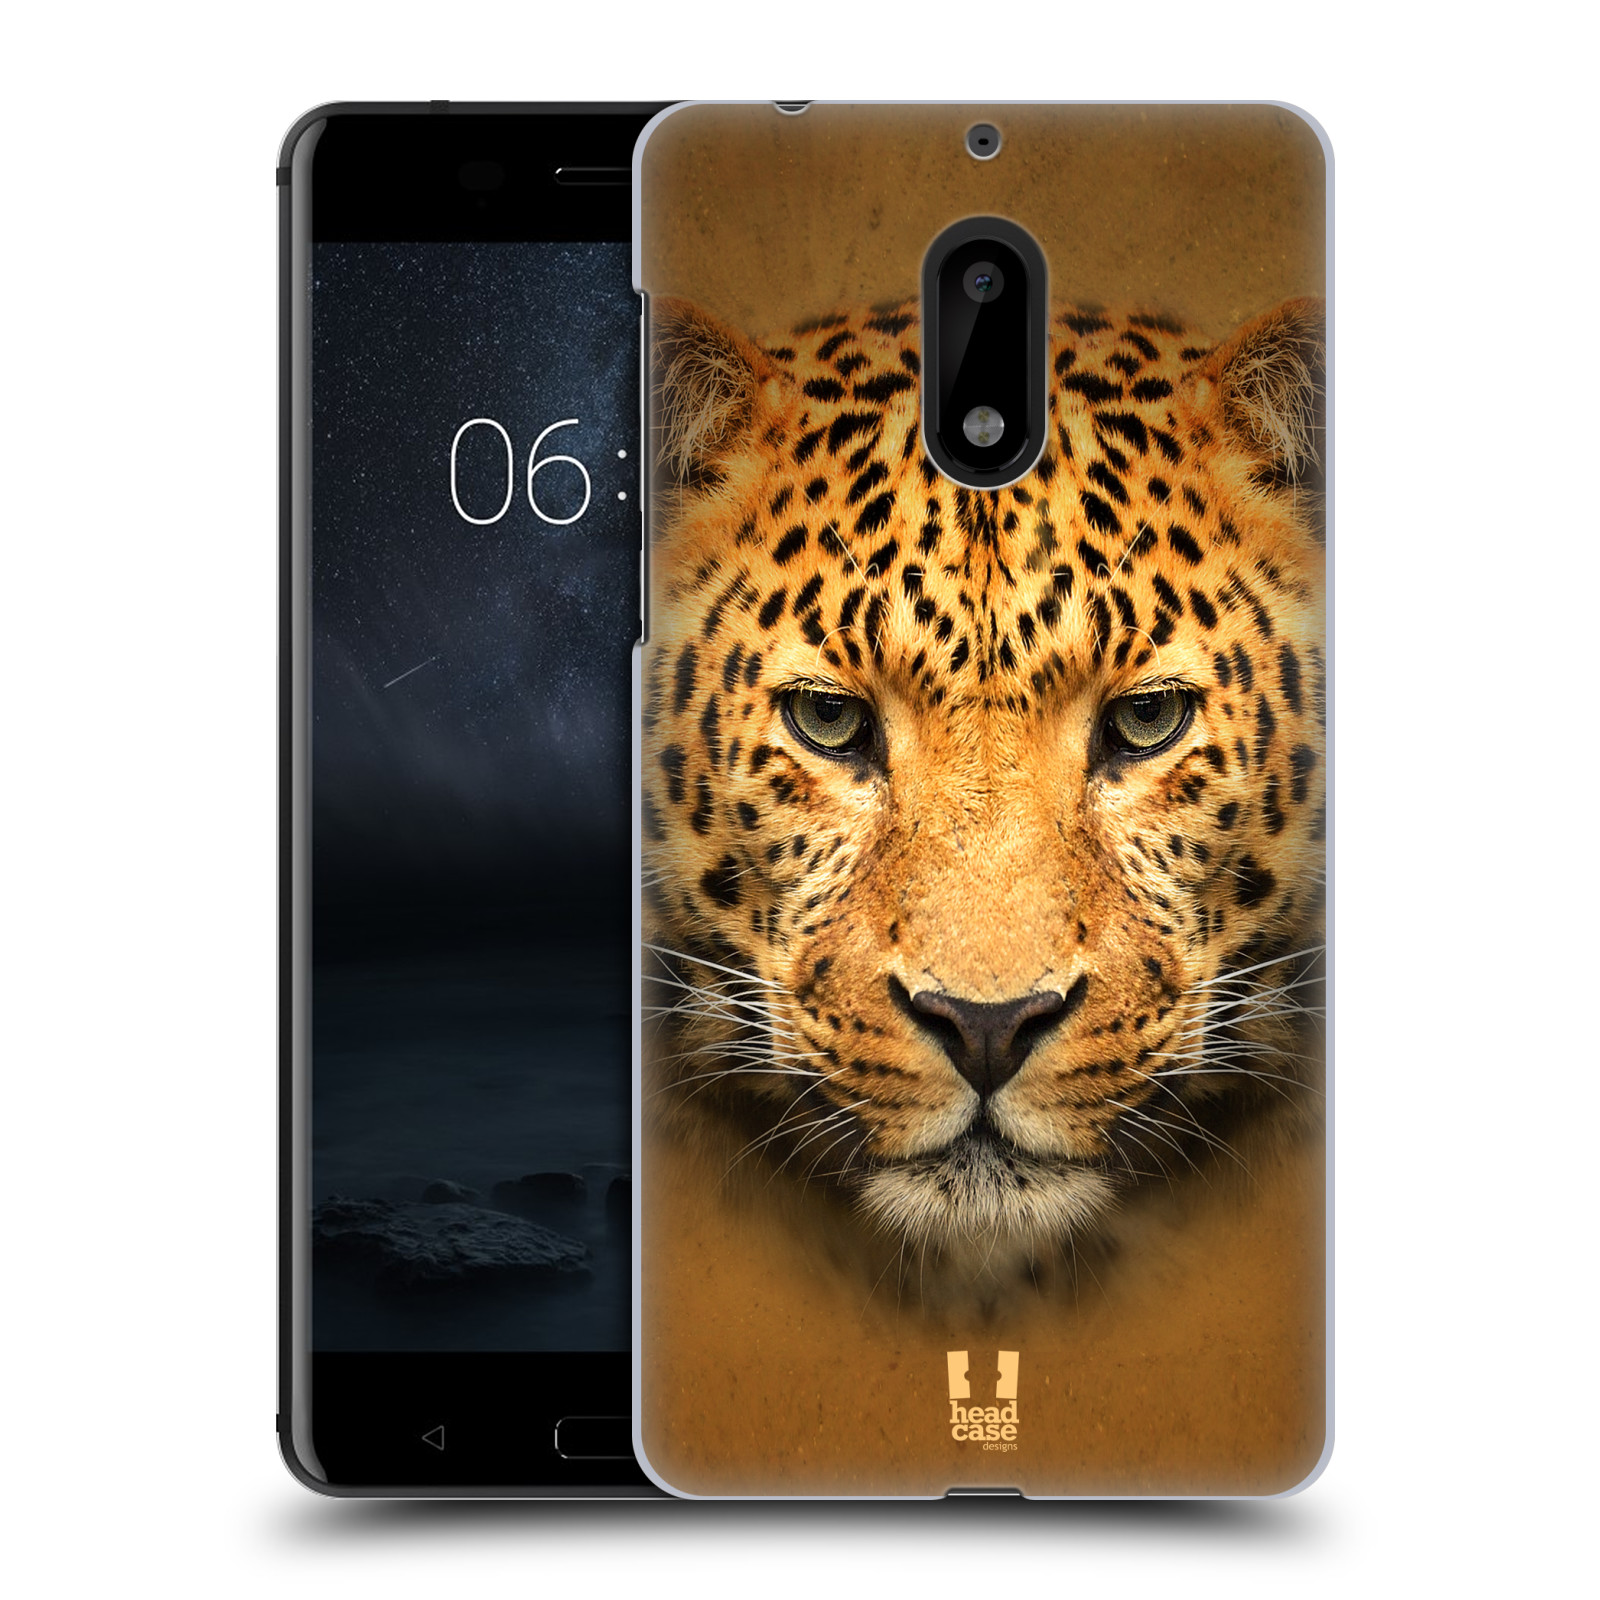 HEAD CASE plastový obal na mobil Nokia 6 vzor Zvířecí tváře 2 leopard